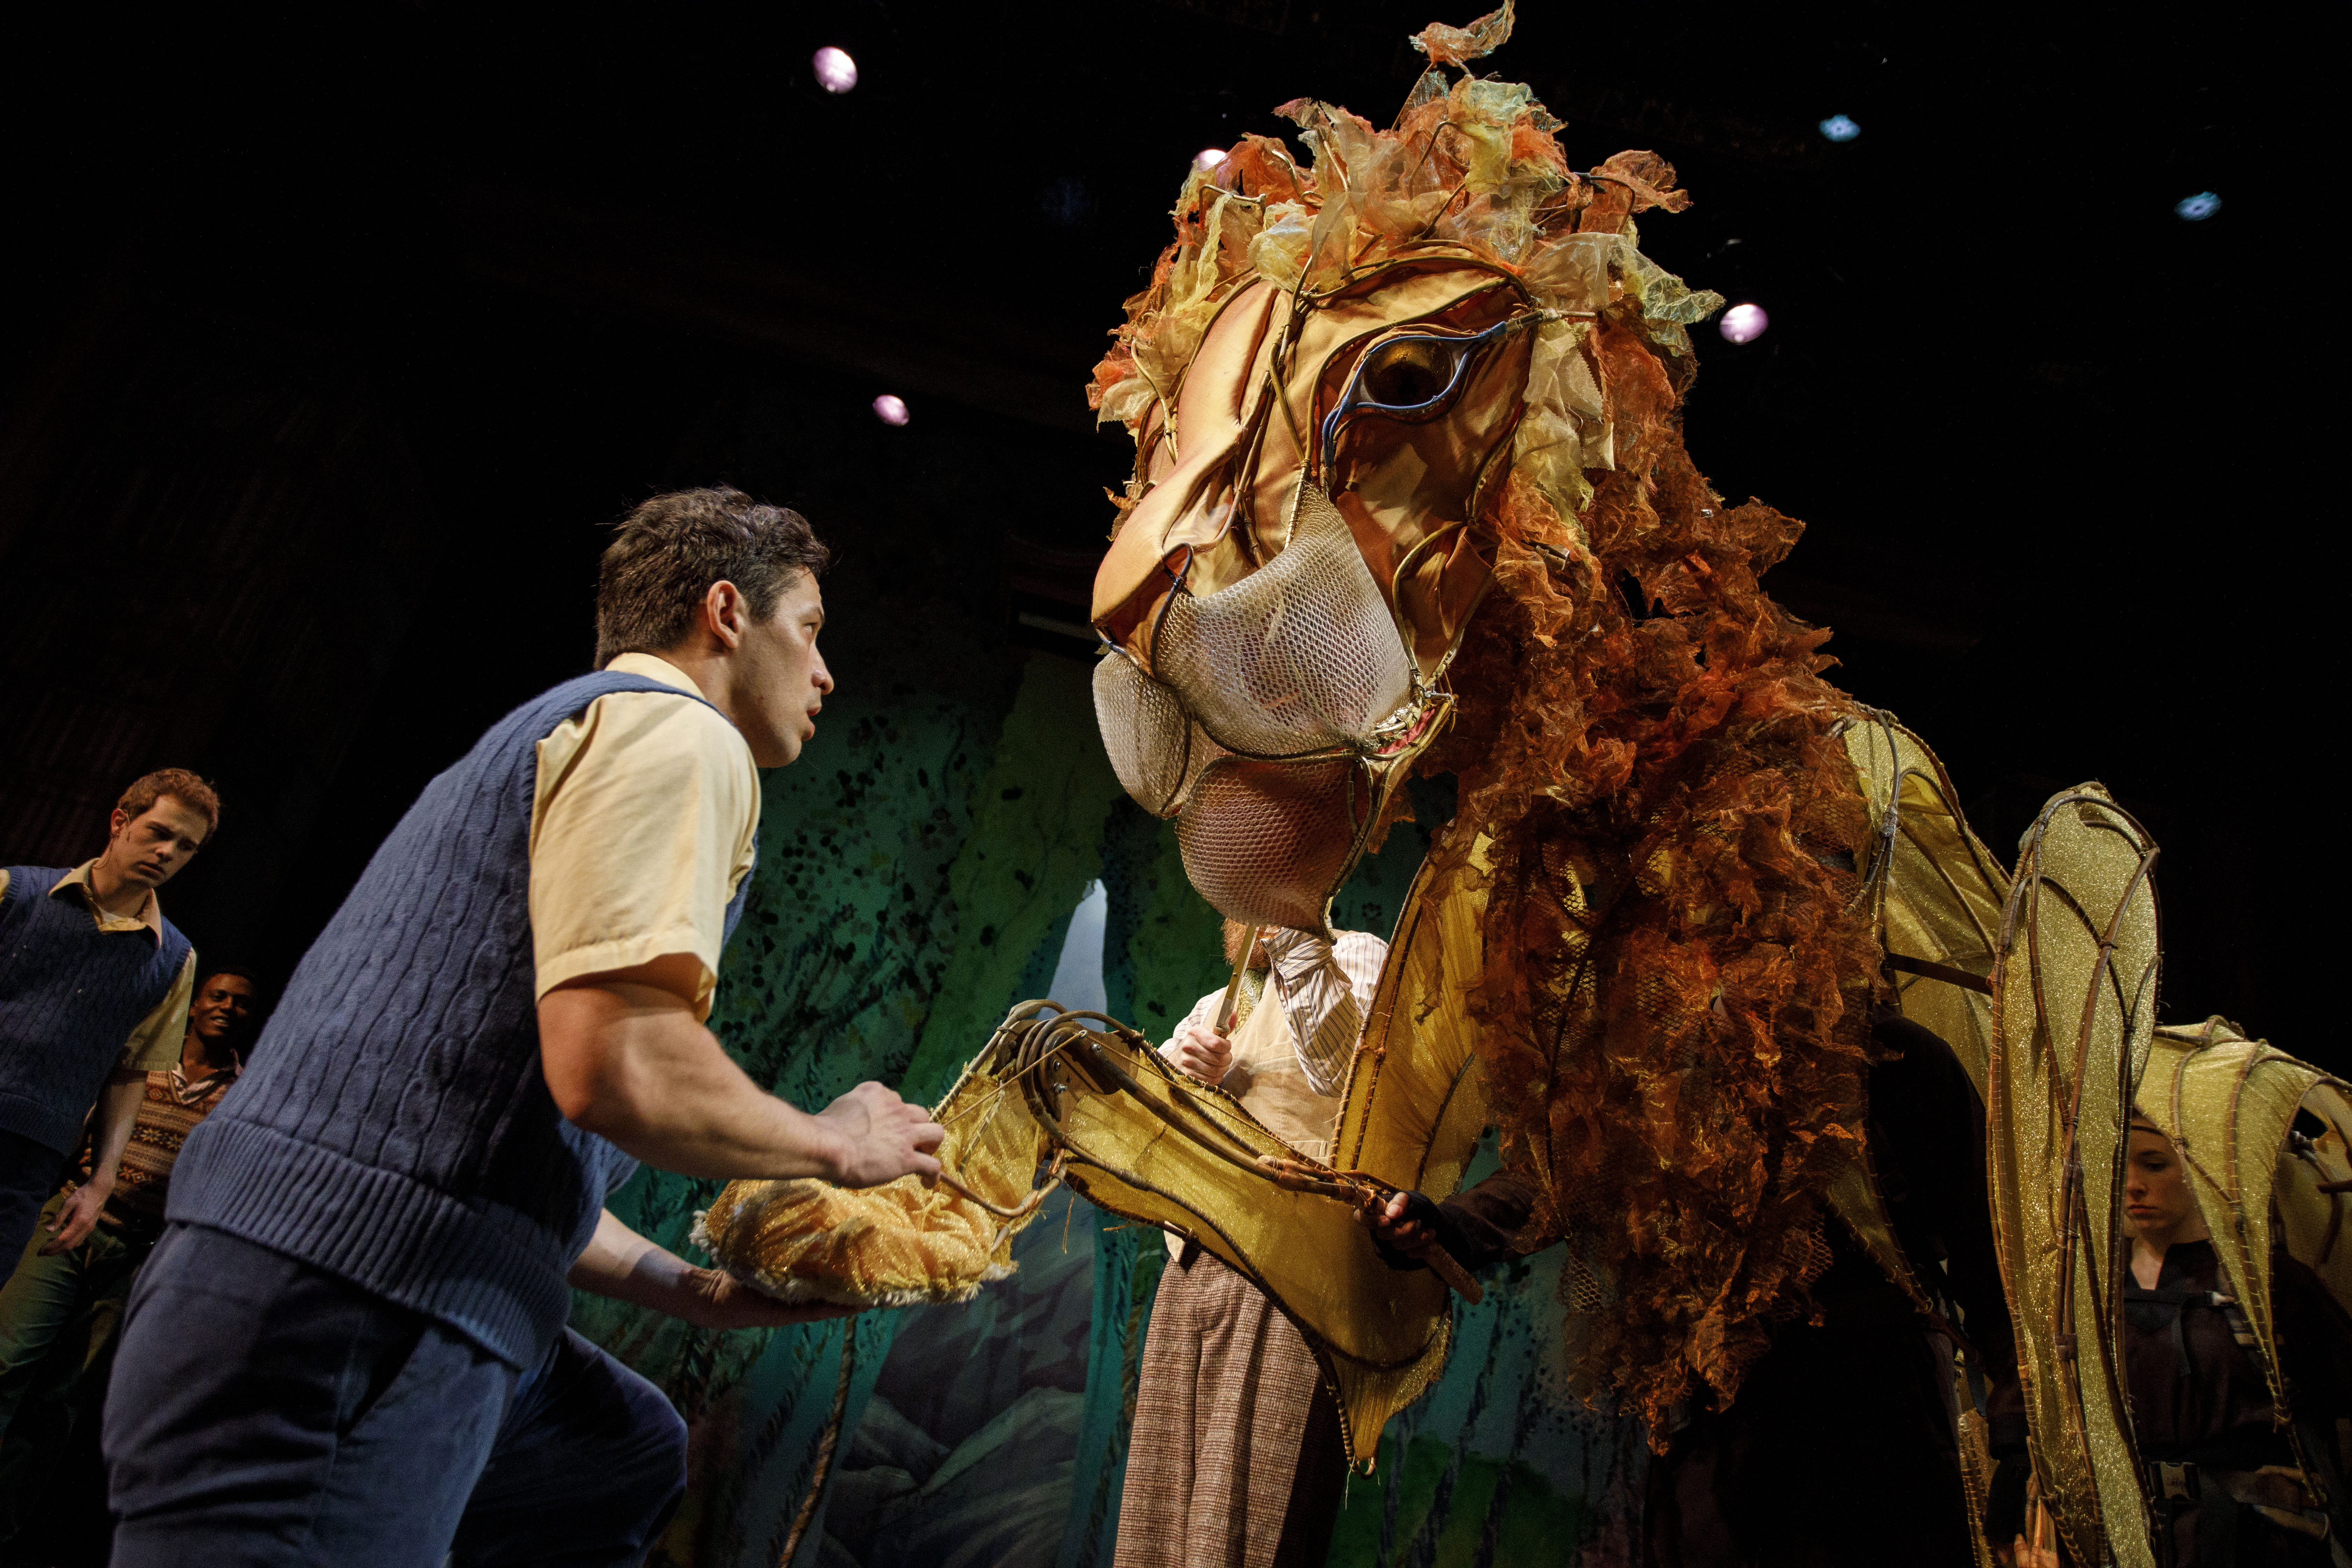 Ryan Sellers as Edmund Pevensie (dancer) with Aslan the Lion.